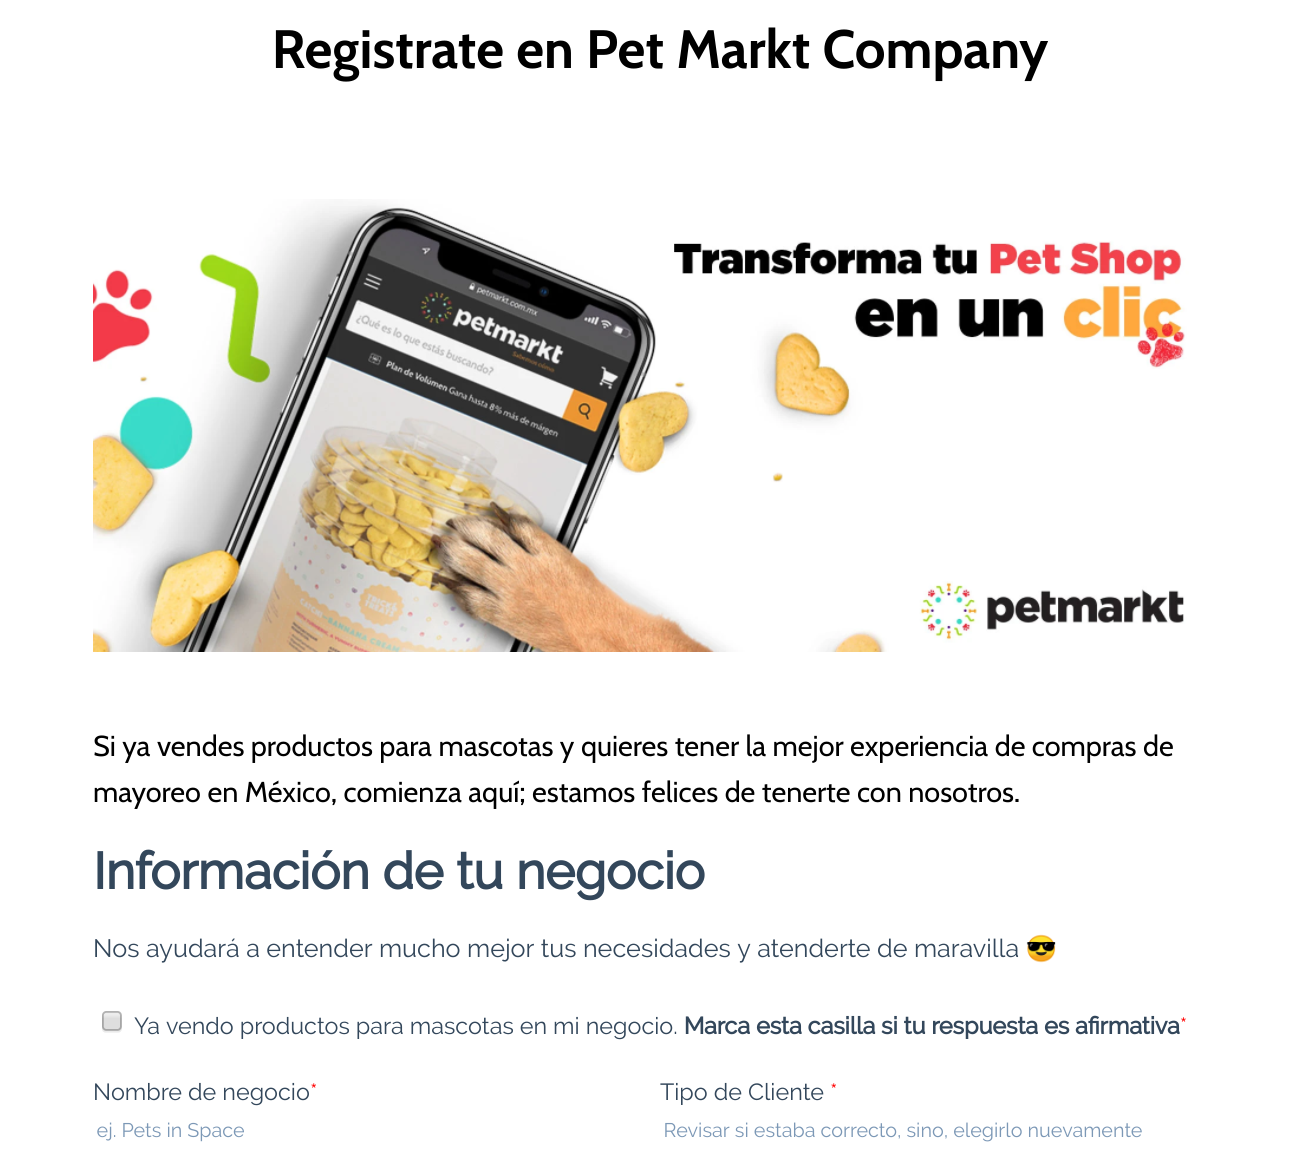 ¿Cómo comprar en Pet Markt?